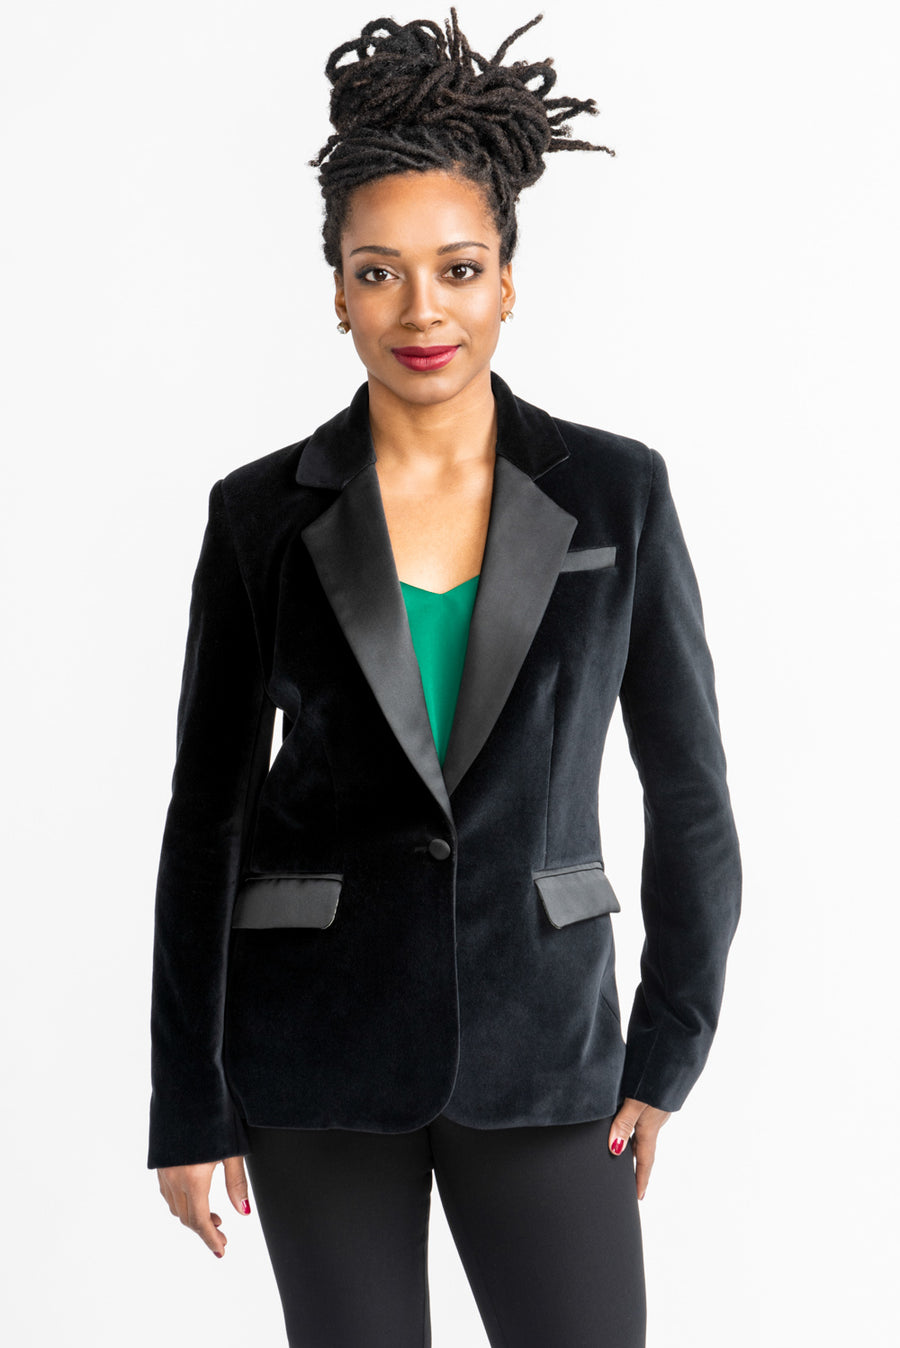 Jasika Blazer Pattern | Tailored Jacket Pattern – Closet Core Patterns